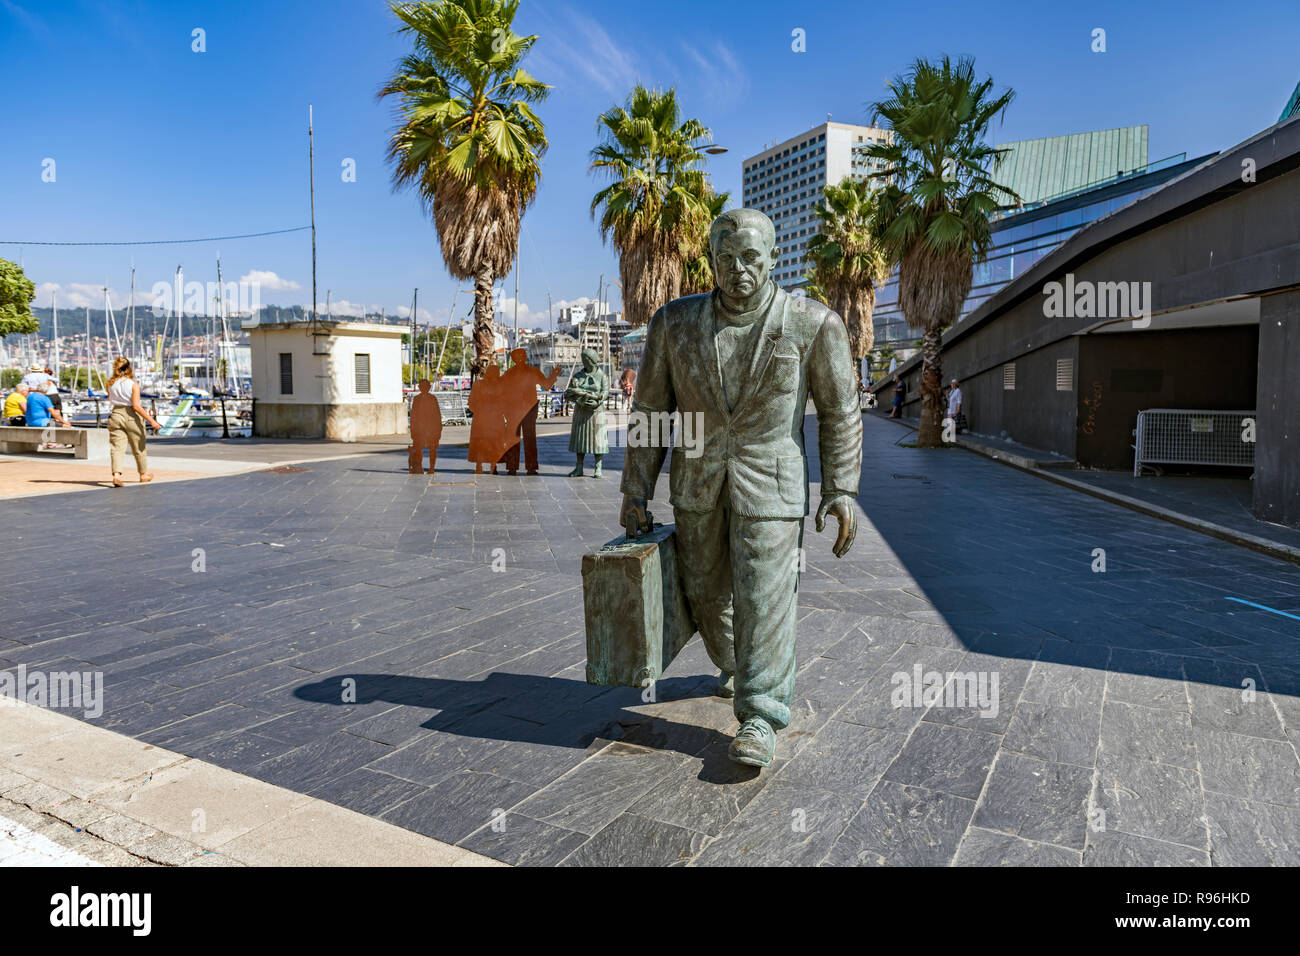 Monumento al emigrante en la ciudad de Vigo. Un gruppo di statue dello scultore Ramón Conde al di fuori del porto di Vigo Spagna terminale Foto Stock